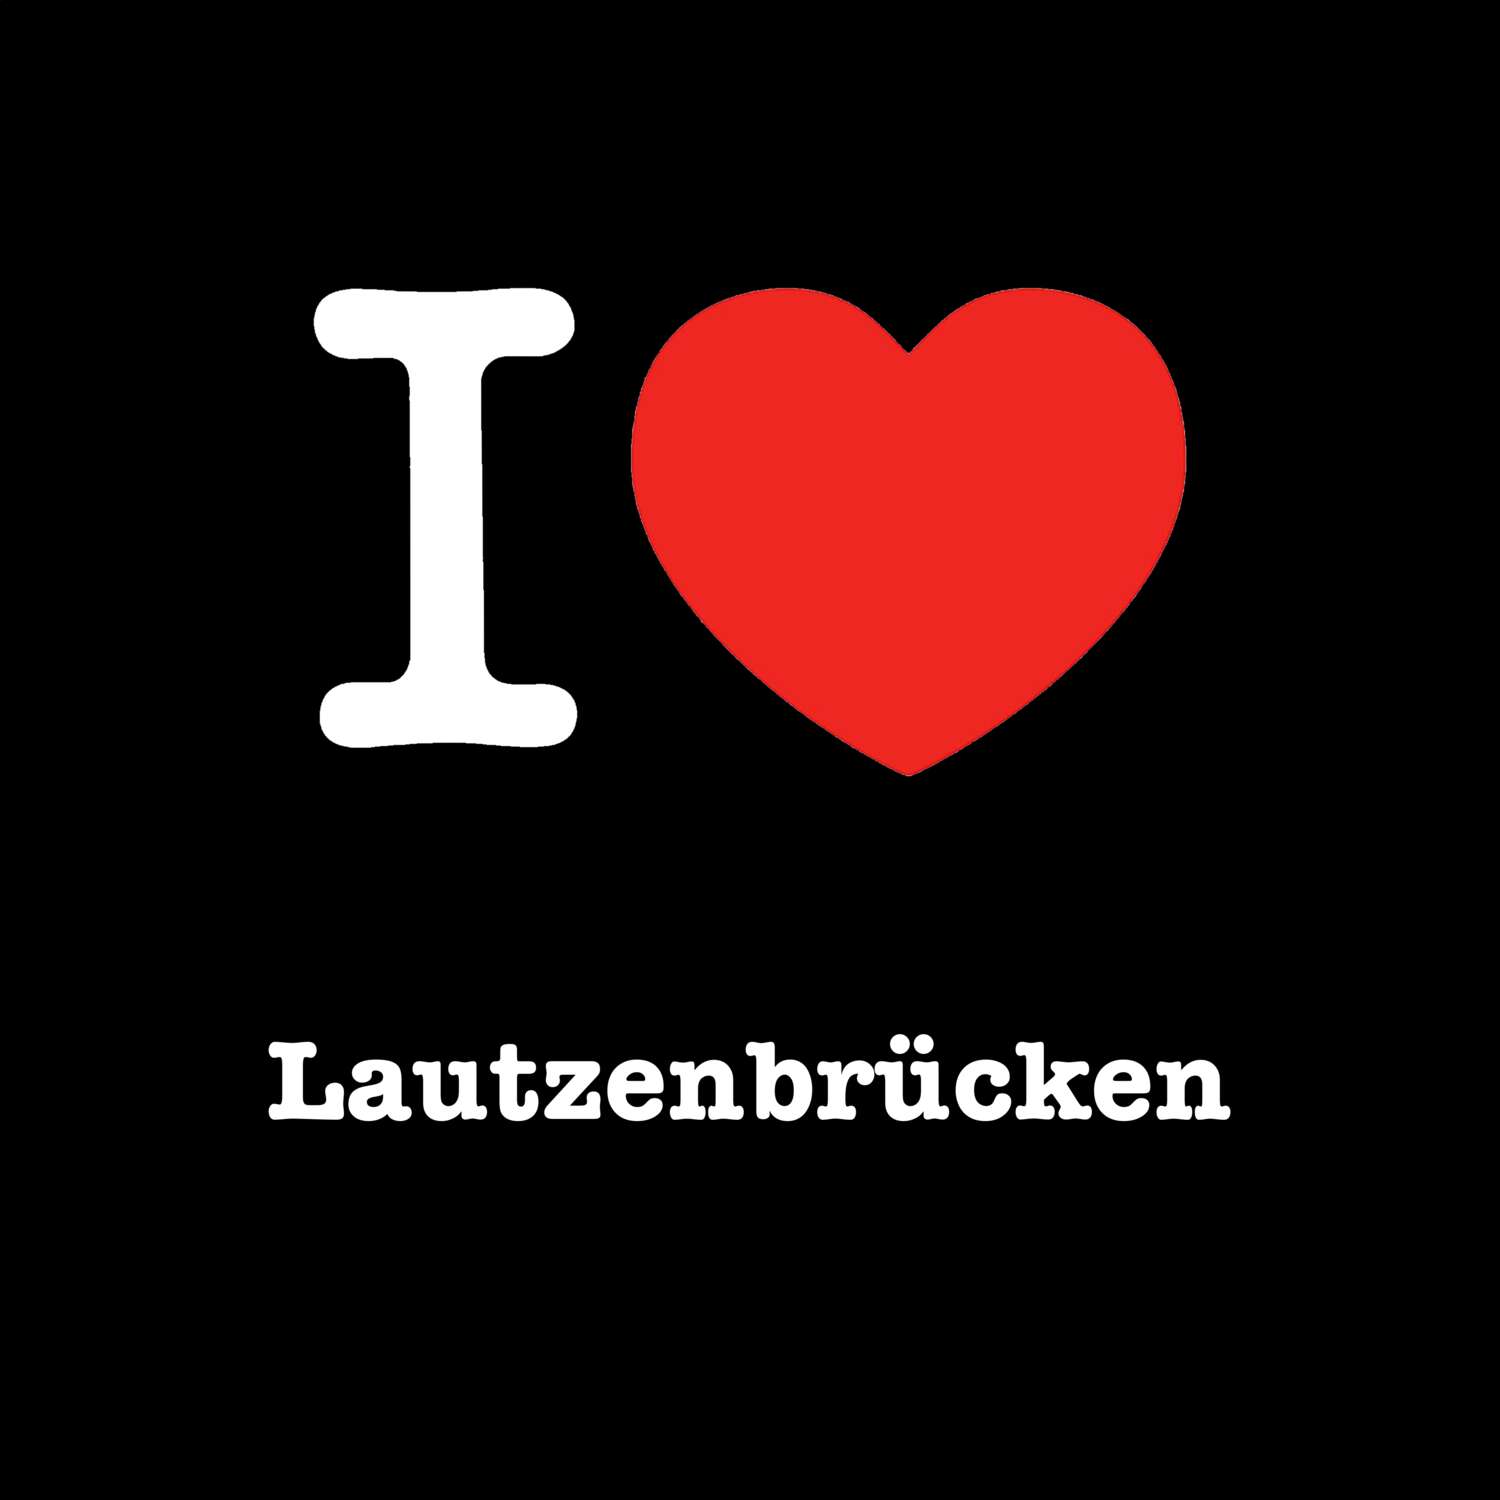 Lautzenbrücken T-Shirt »I love«